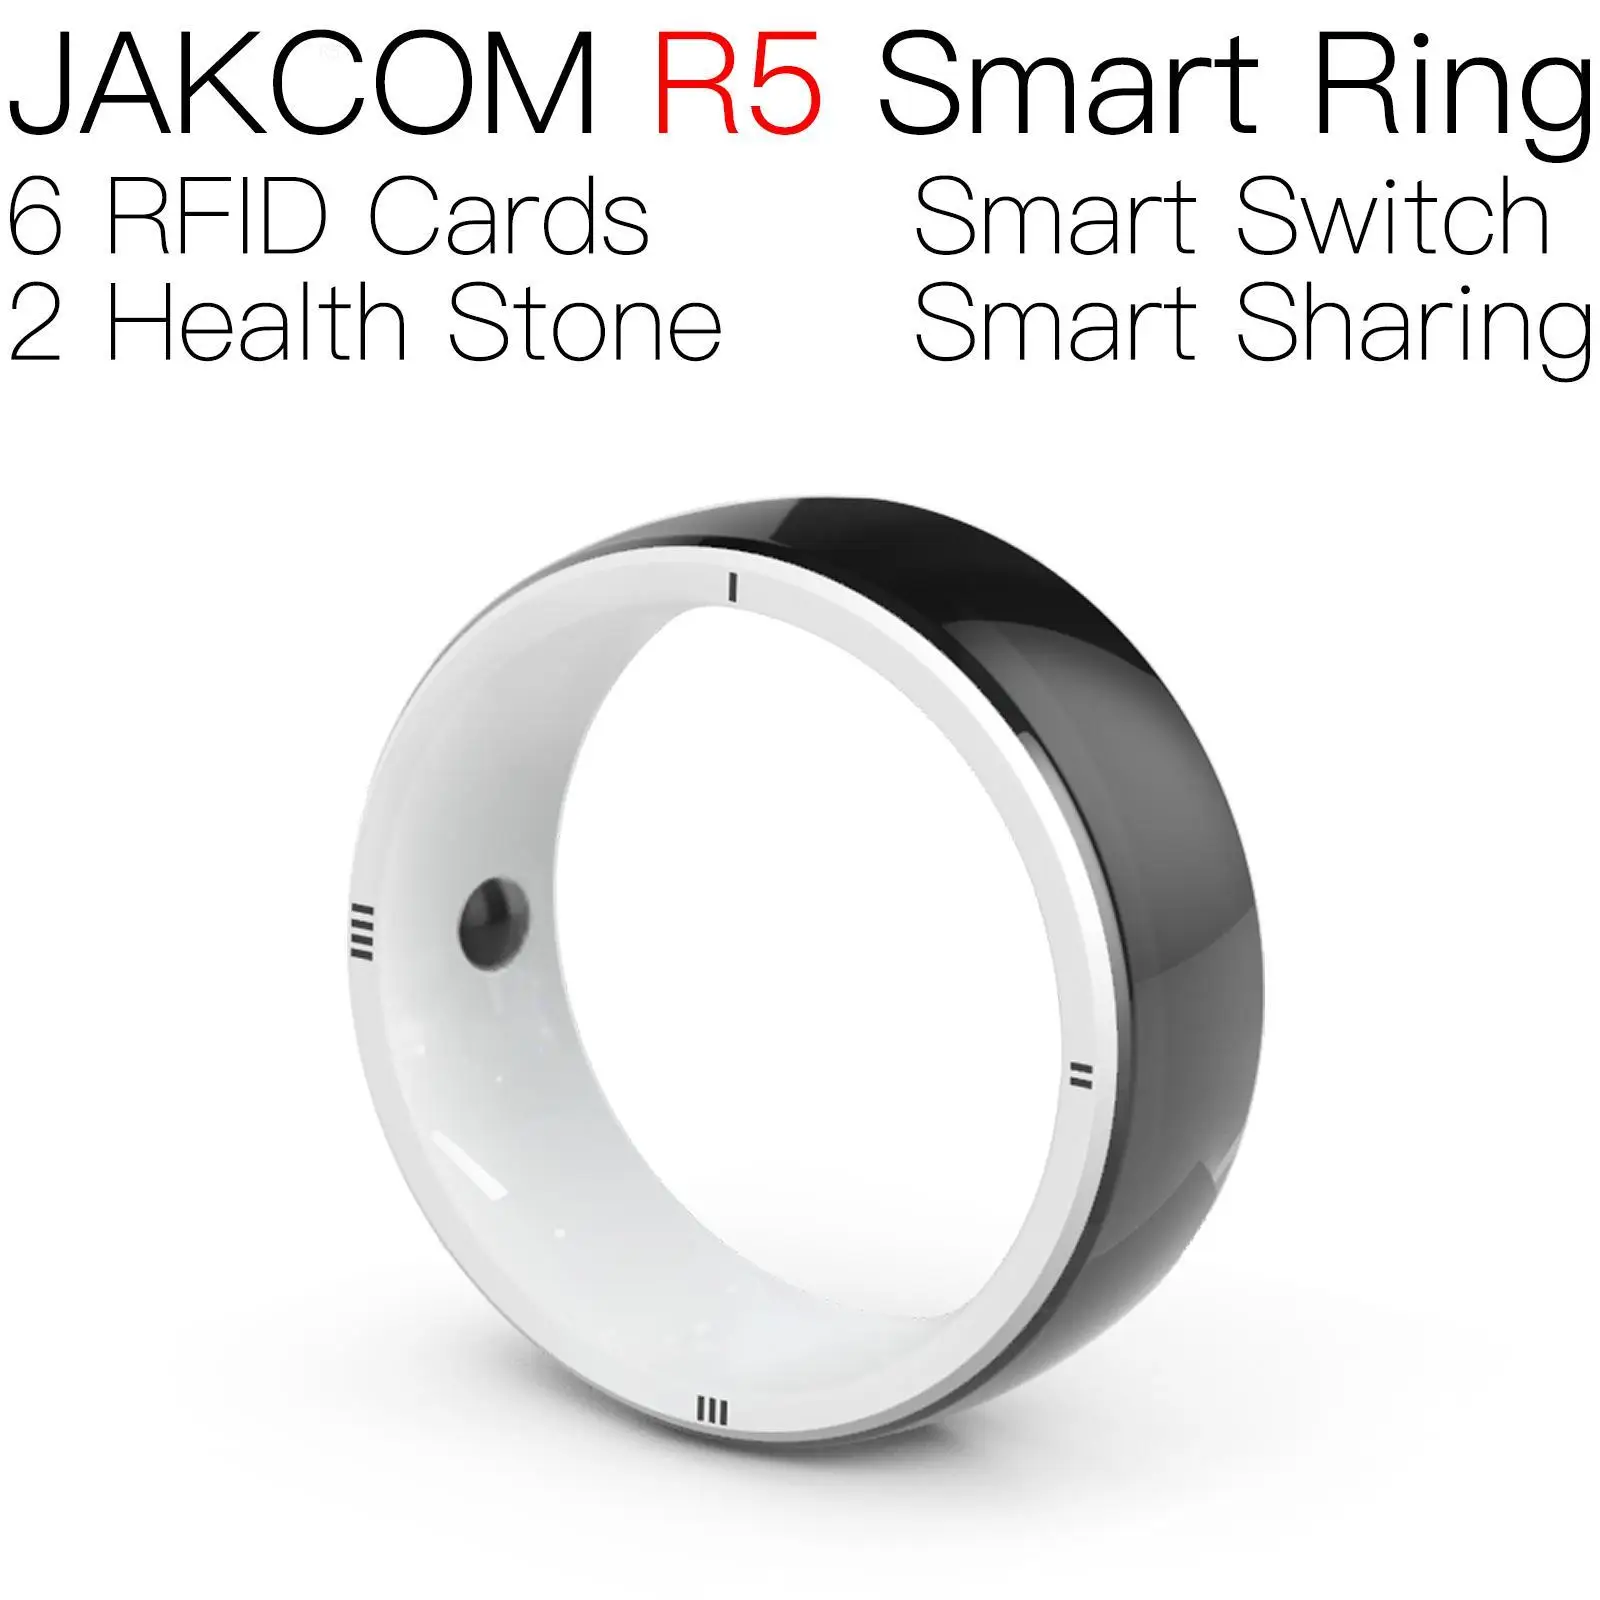 

Умное кольцо JAKCOM R5, новее, чем карта, rfid, копия, наклейка для банкомата, УВЧ, устройство для чтения записей, e 213, carte, jusne, запись, uhf